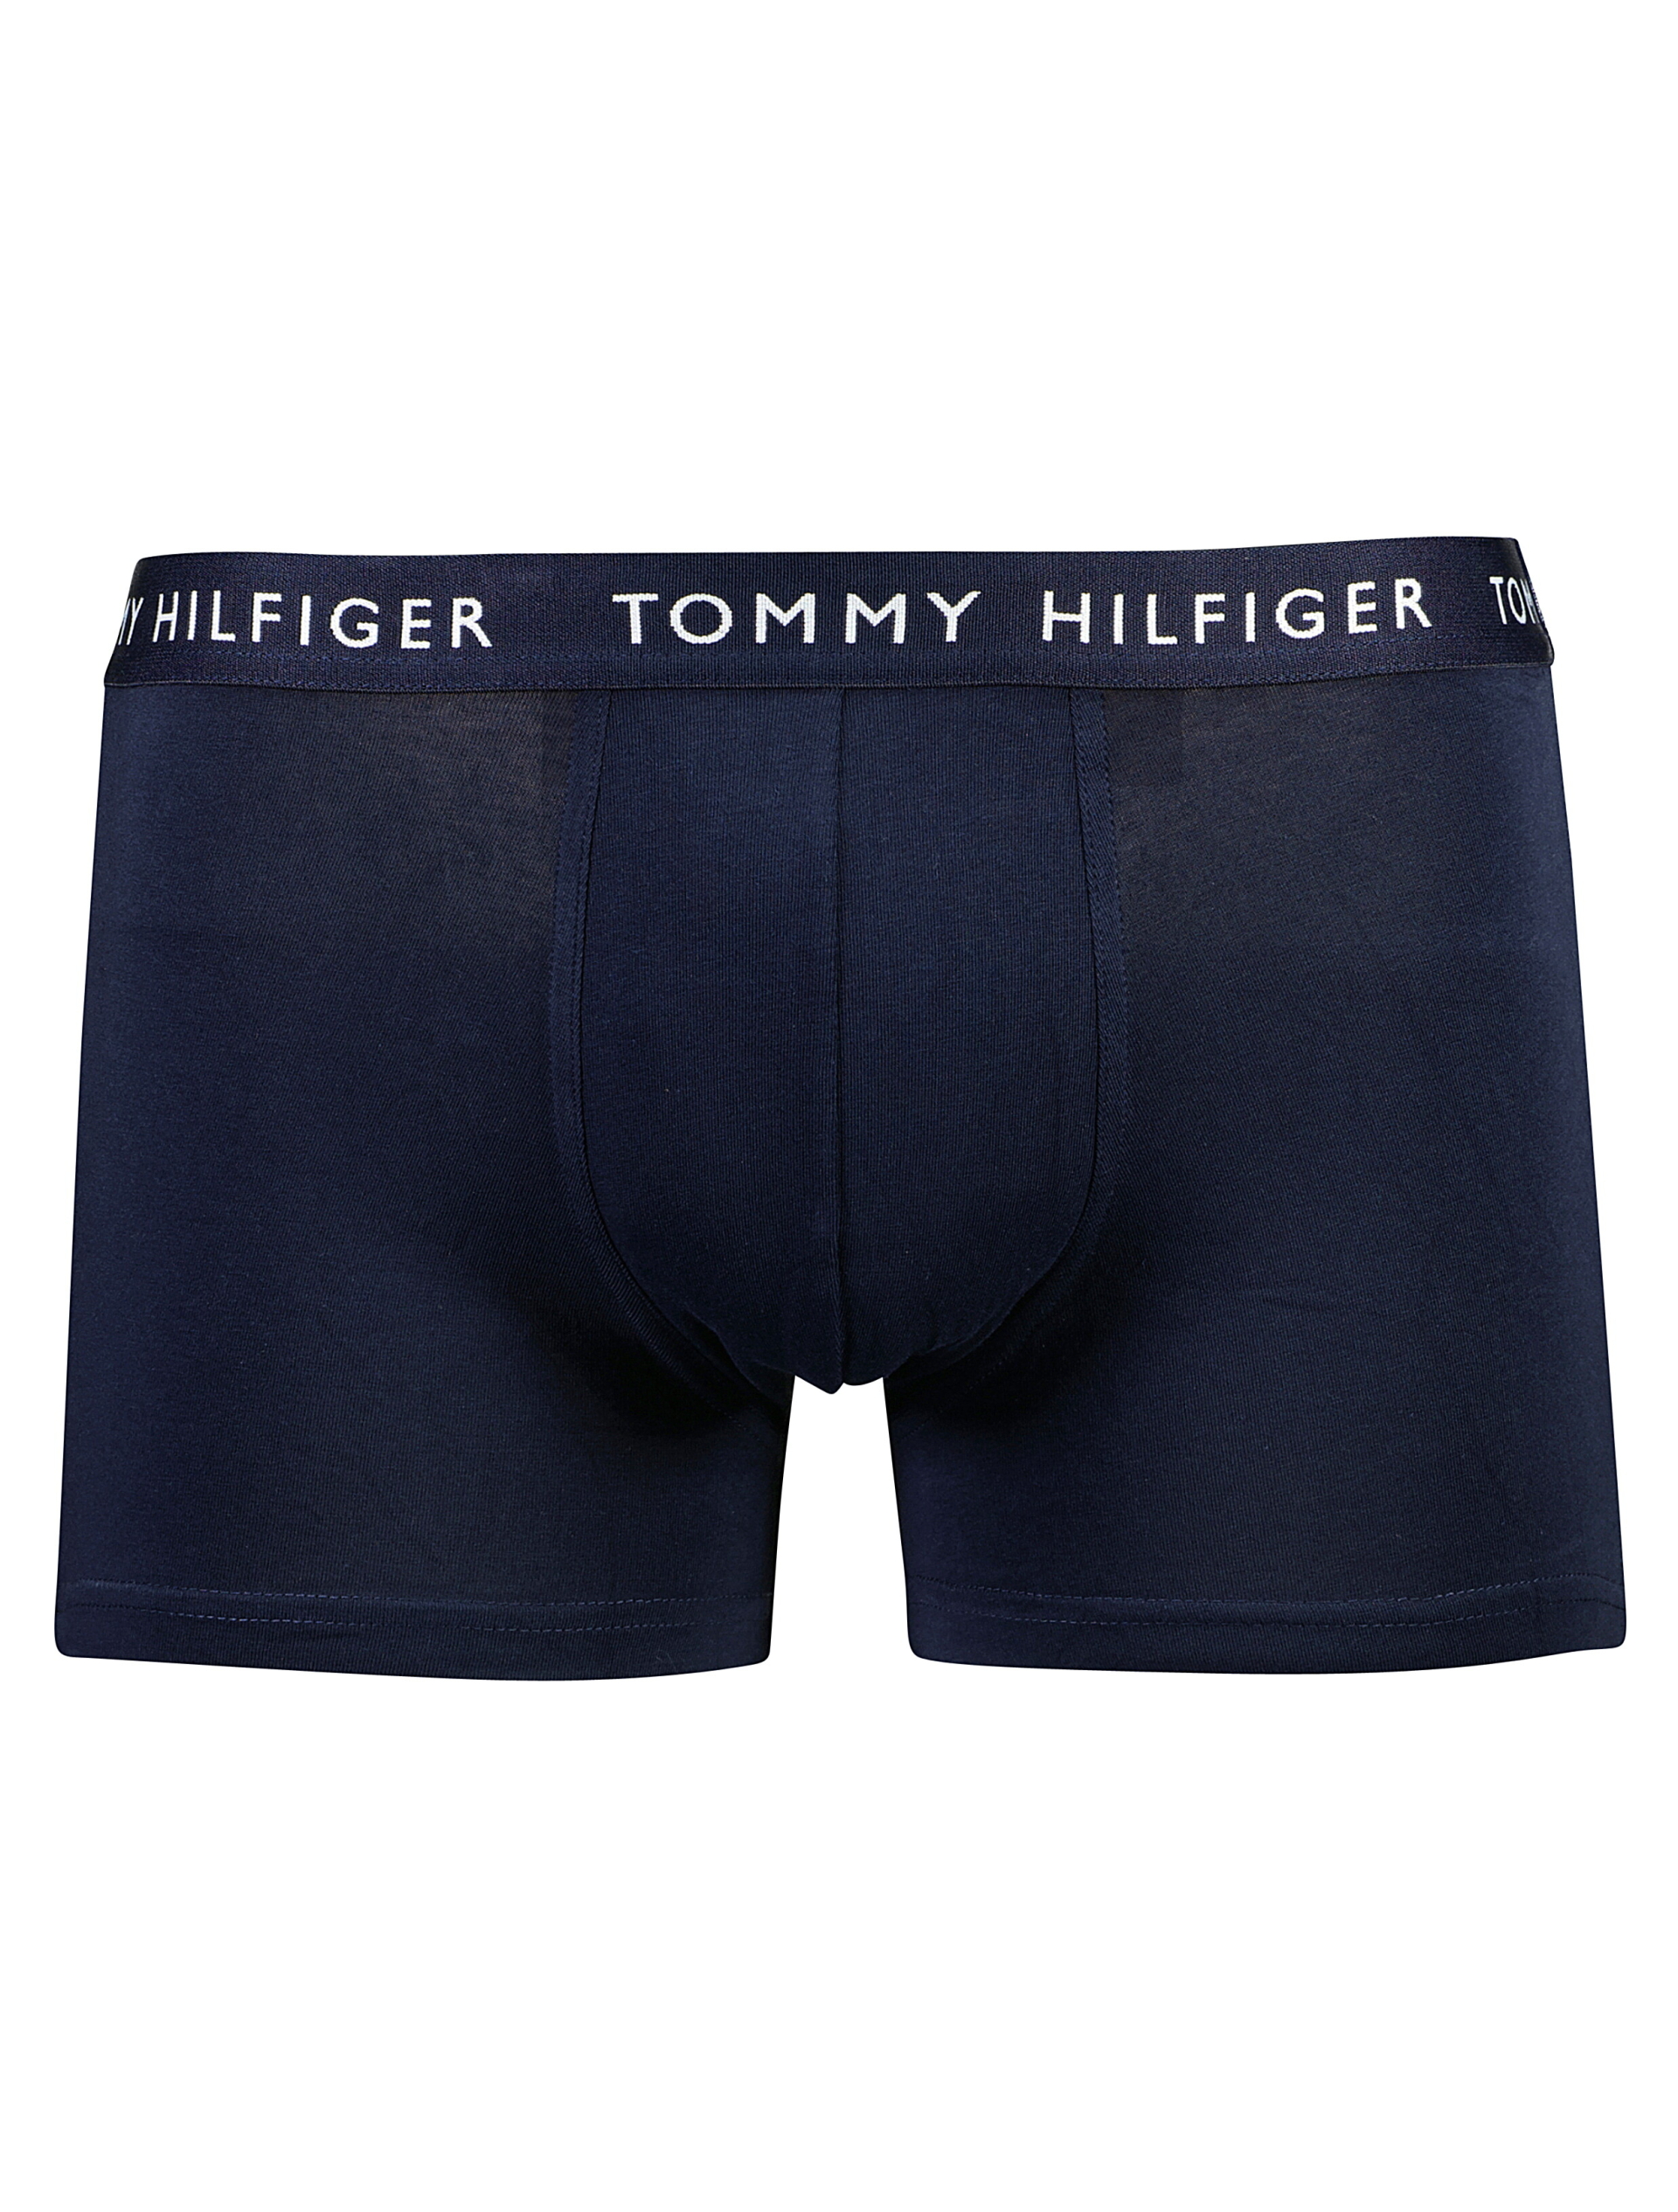 Tommy Hilfiger Tights multi / 0v4 multi